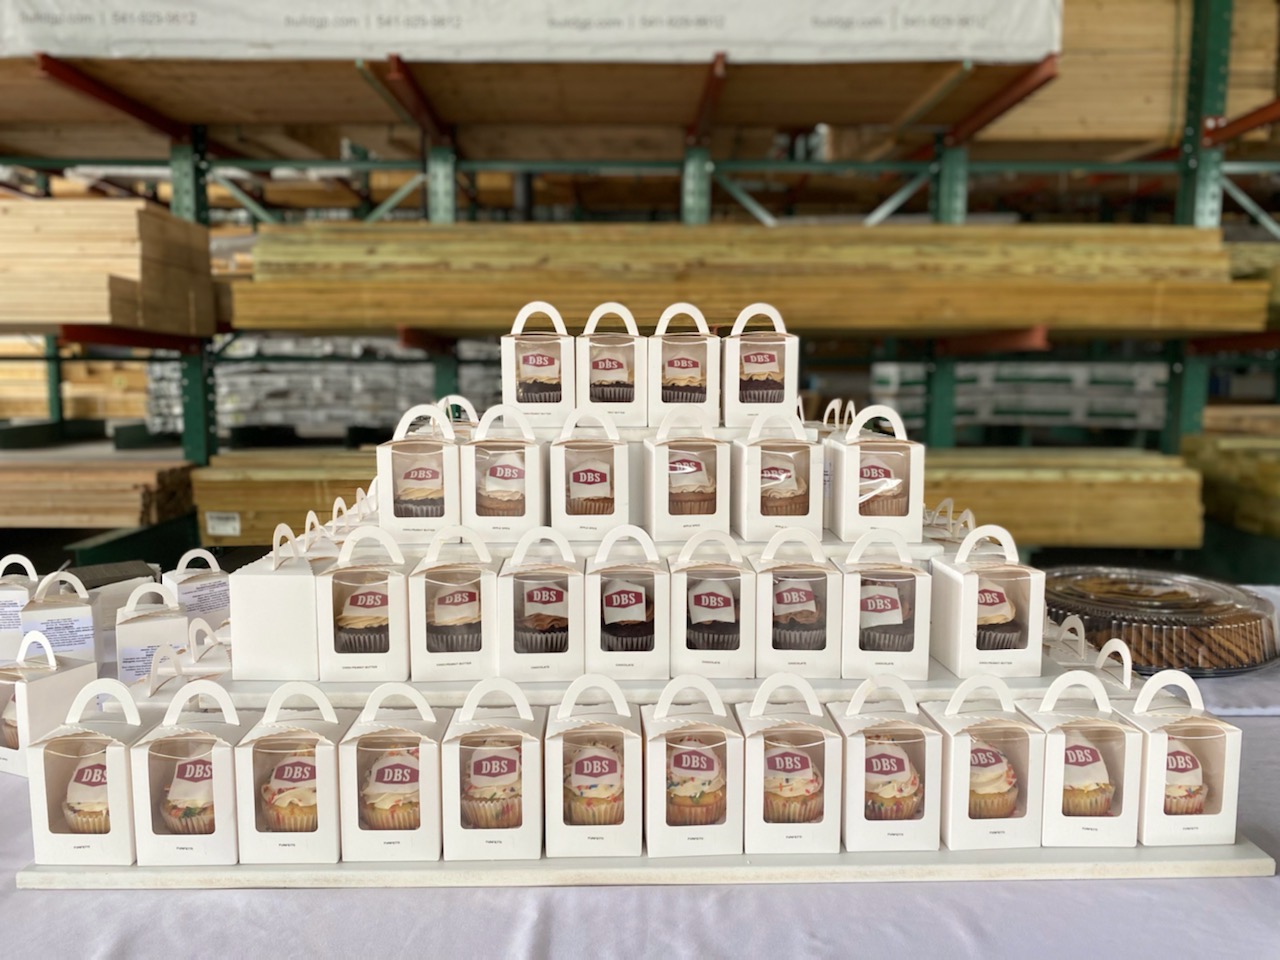 Pyramid of Boxed Cupcakes